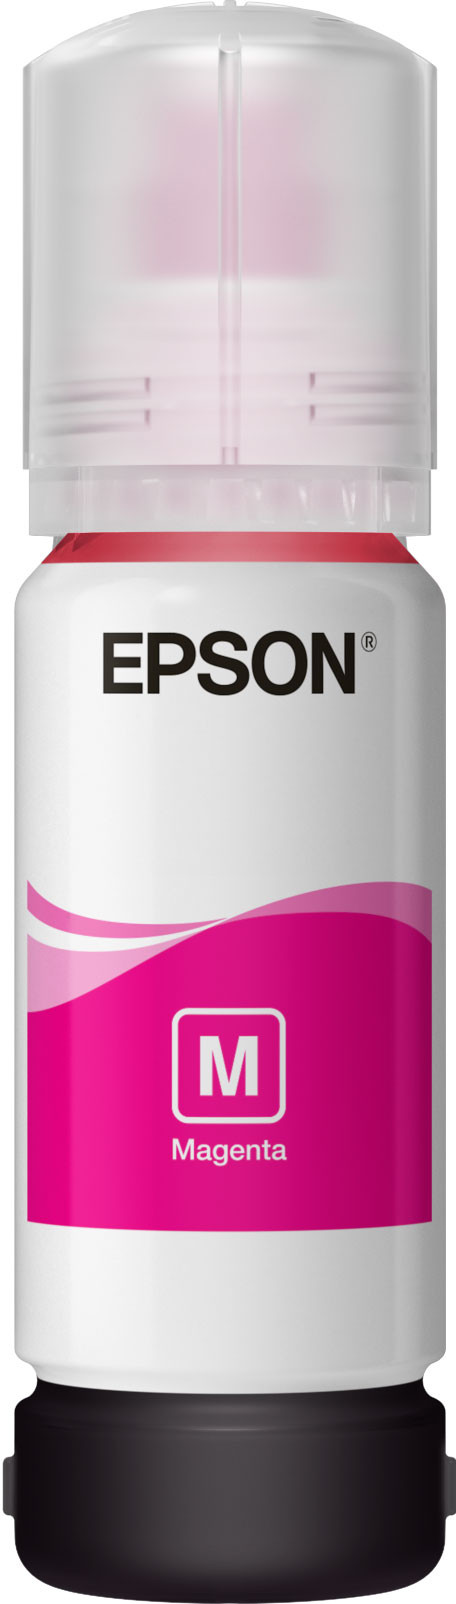 Epson-102-EcoTank-Pigment-Tintenflasche-Magenta